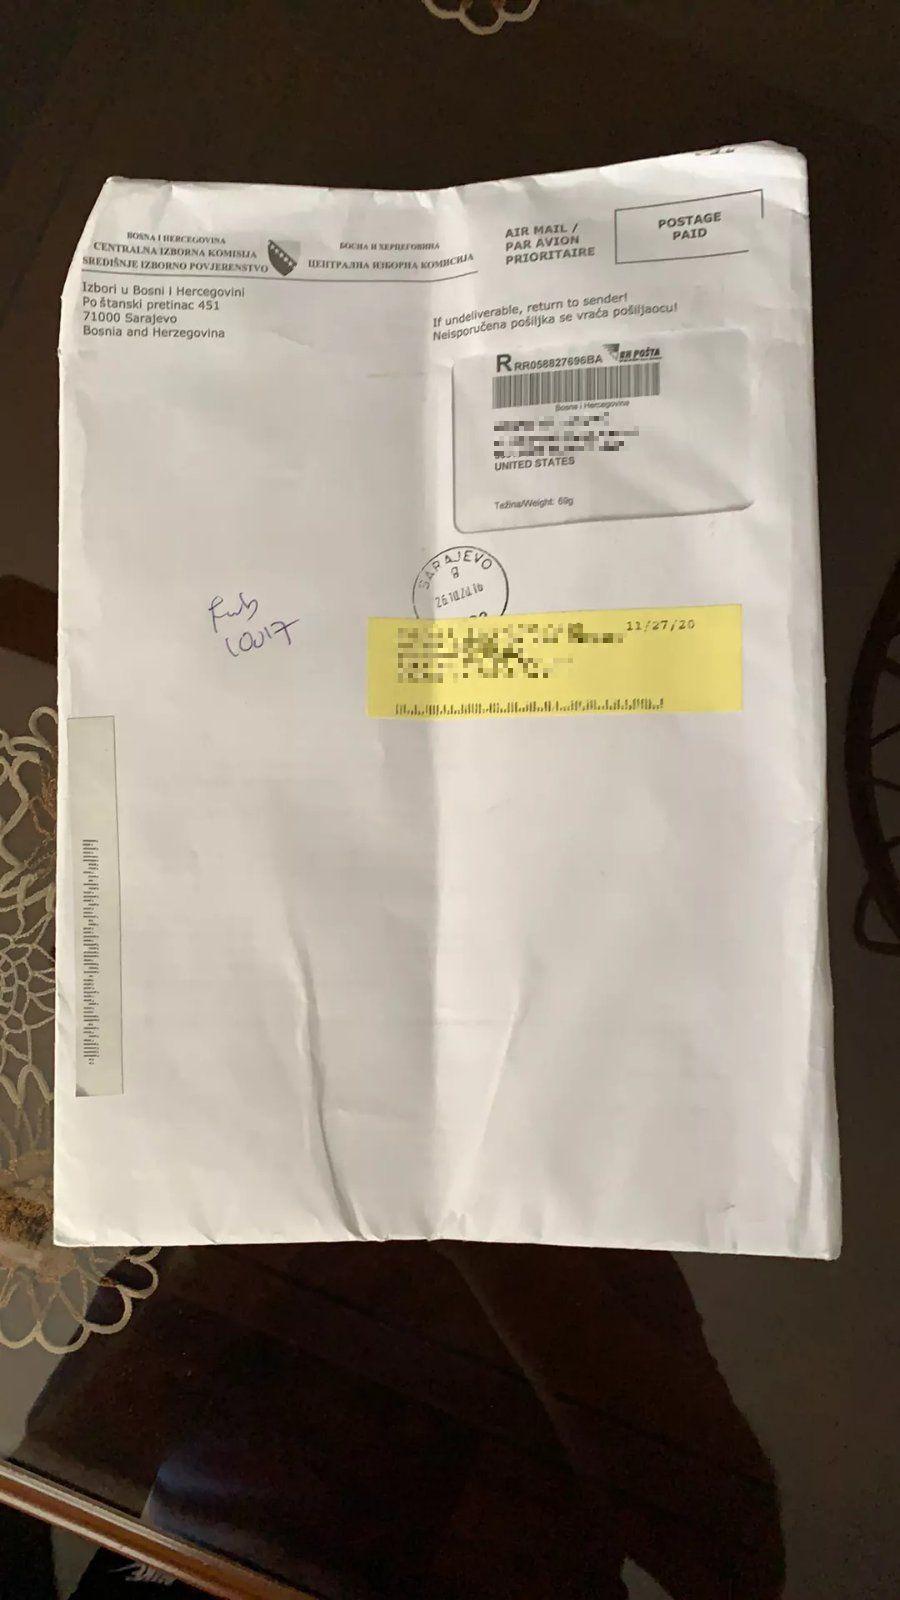 Fotografija pošiljke koja je iz Sarajeva upućena u SAD 26. oktobra, a stigla 27. novembra - Avaz